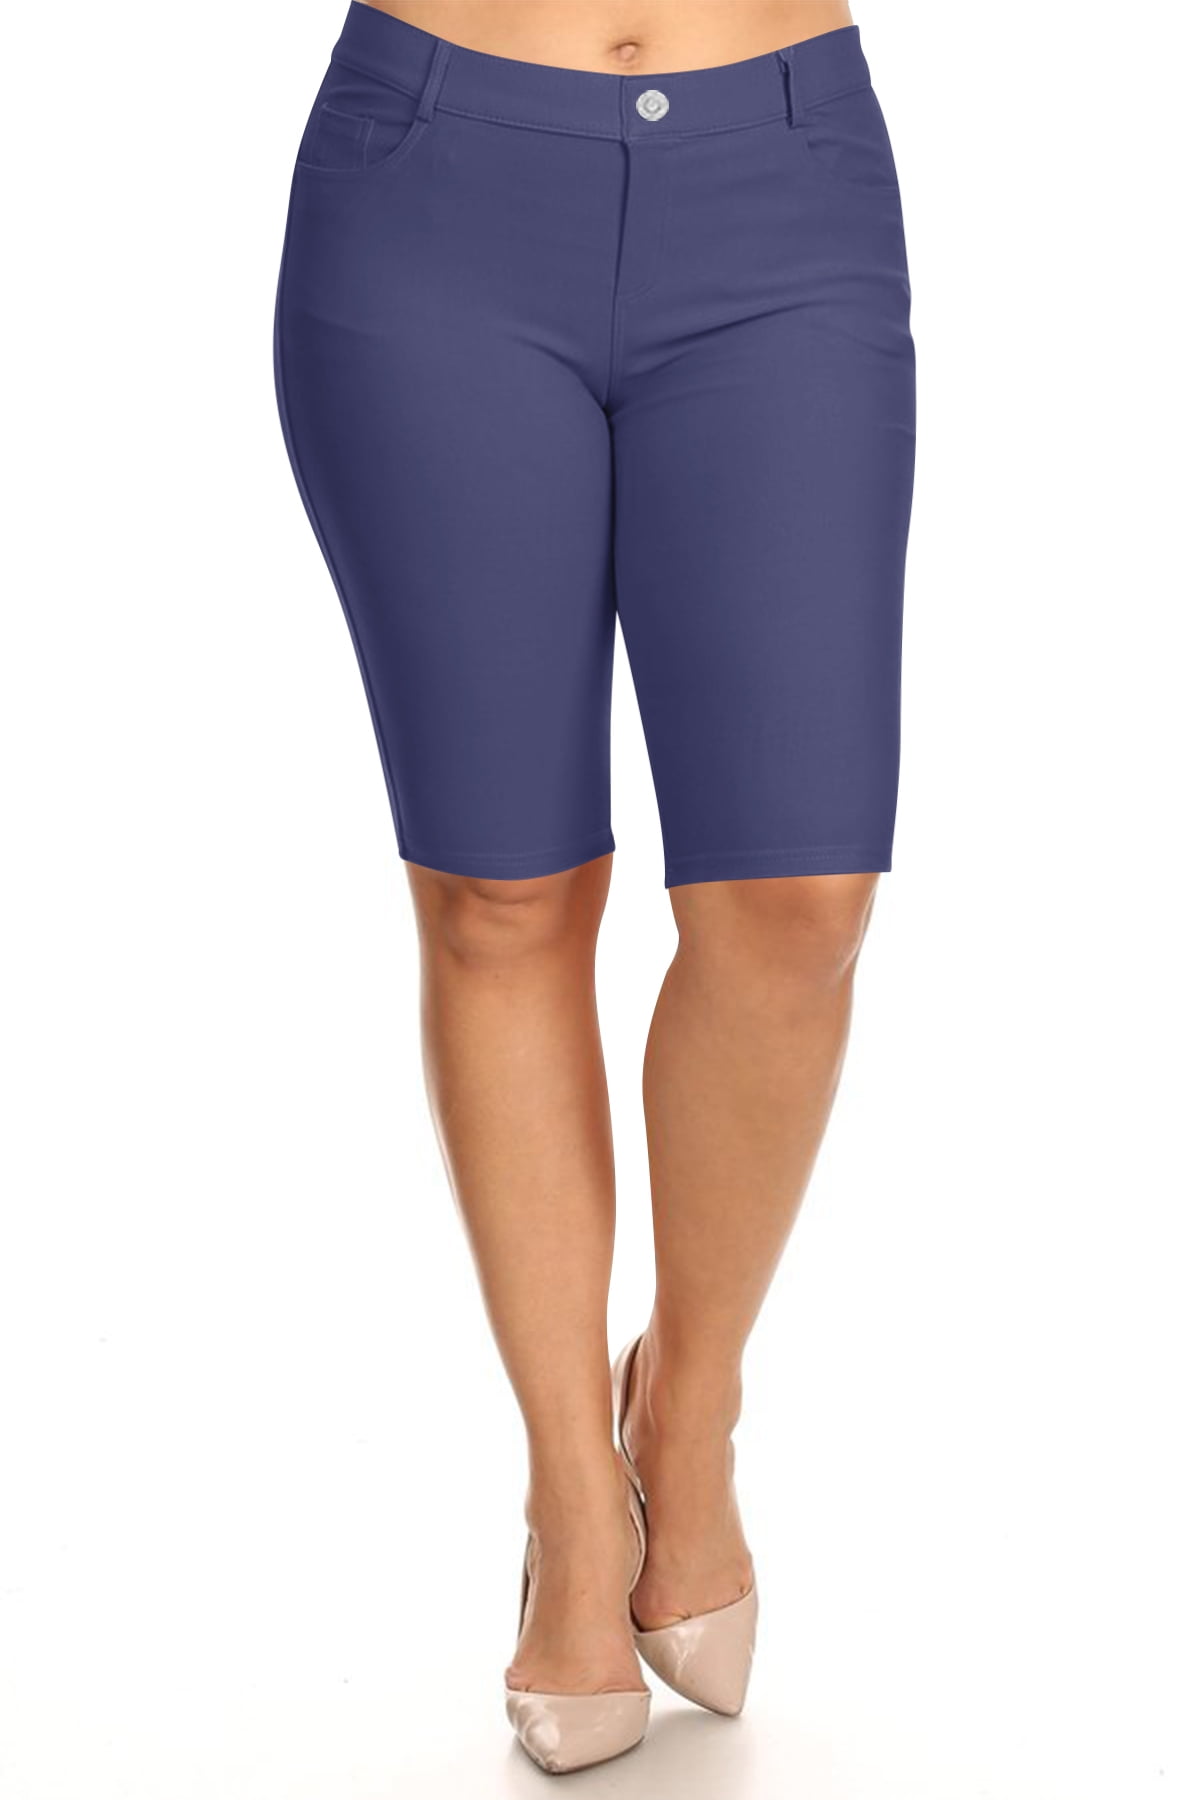 Børns dag Stationær behagelig Women's Plus Size Casual Stretch Comfy Pockets Solid Bermuda Shorts Pants -  Walmart.com